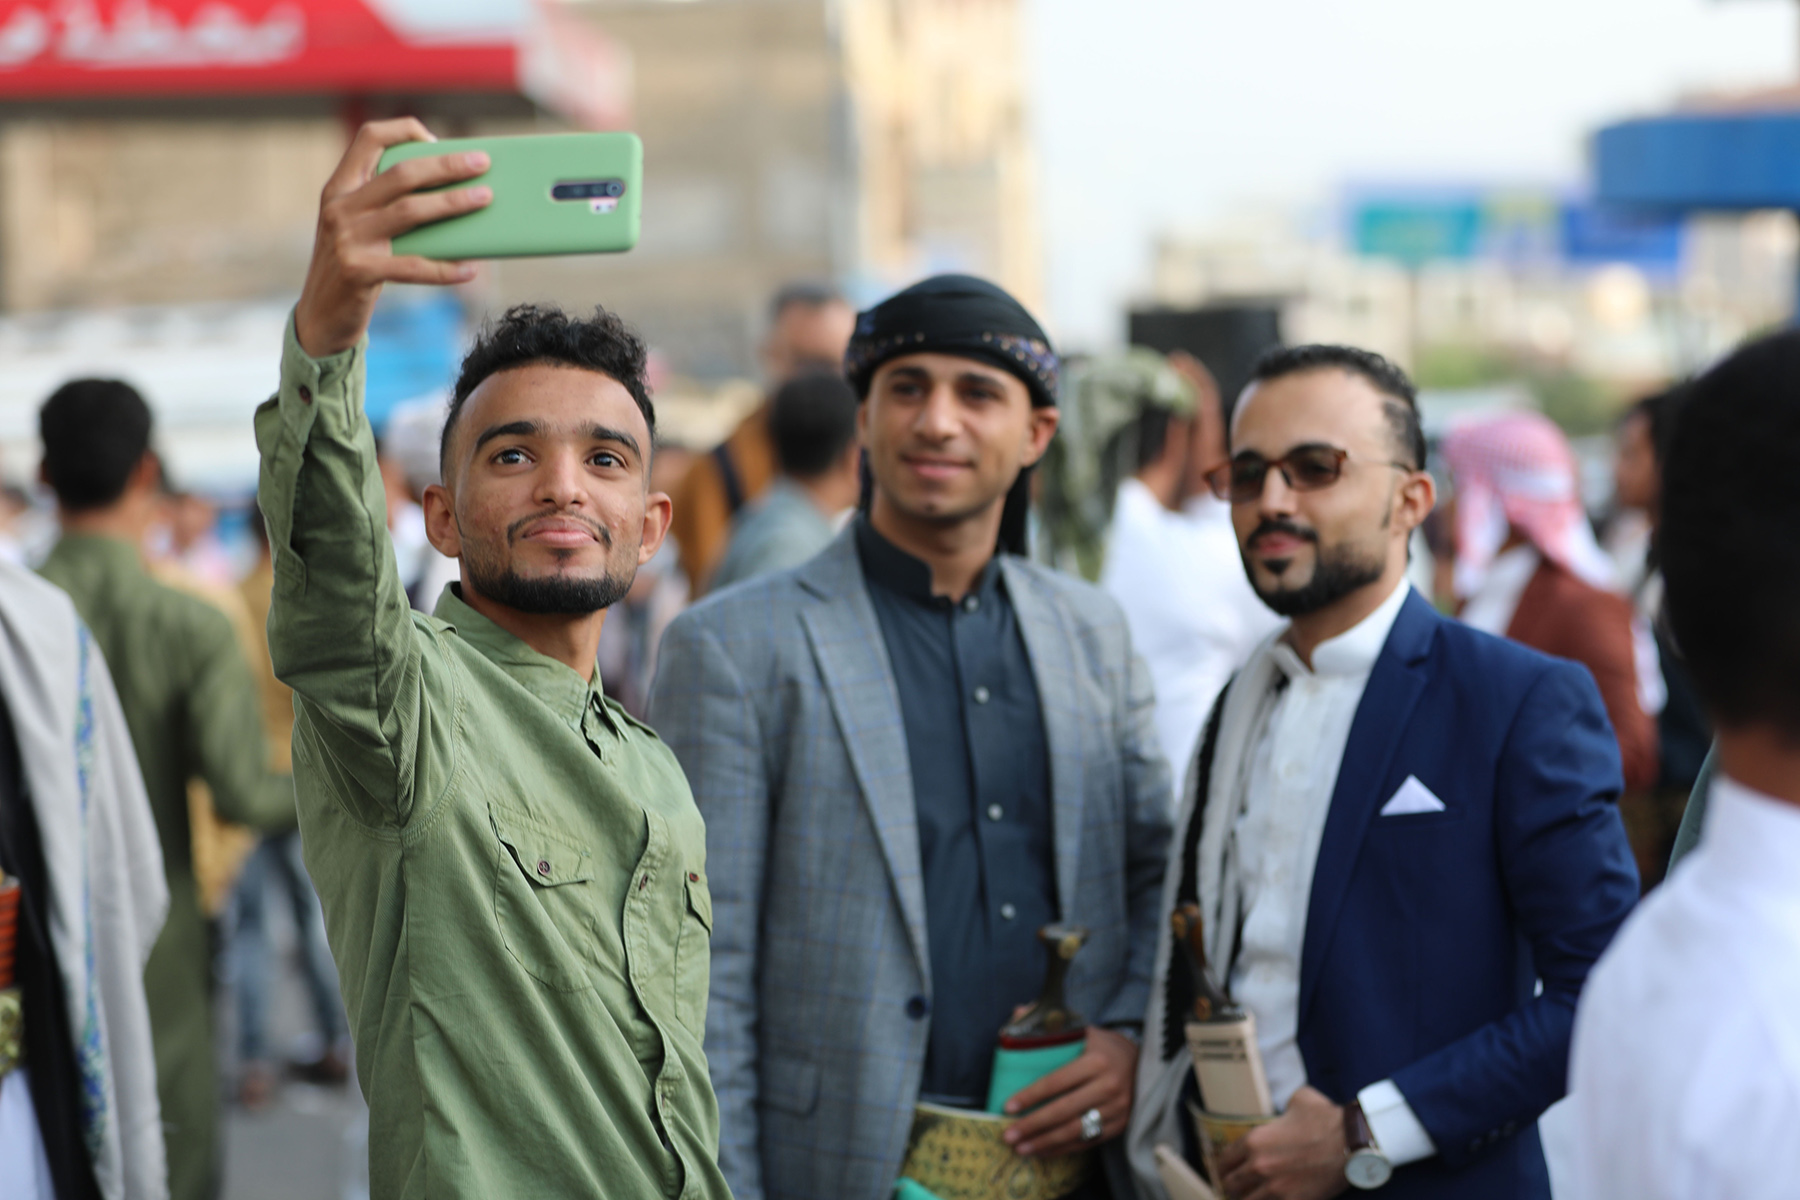 ليست حربنا: رؤية الشباب اليمني والمجتمع المدني للسلام - منتدى سلام اليمن